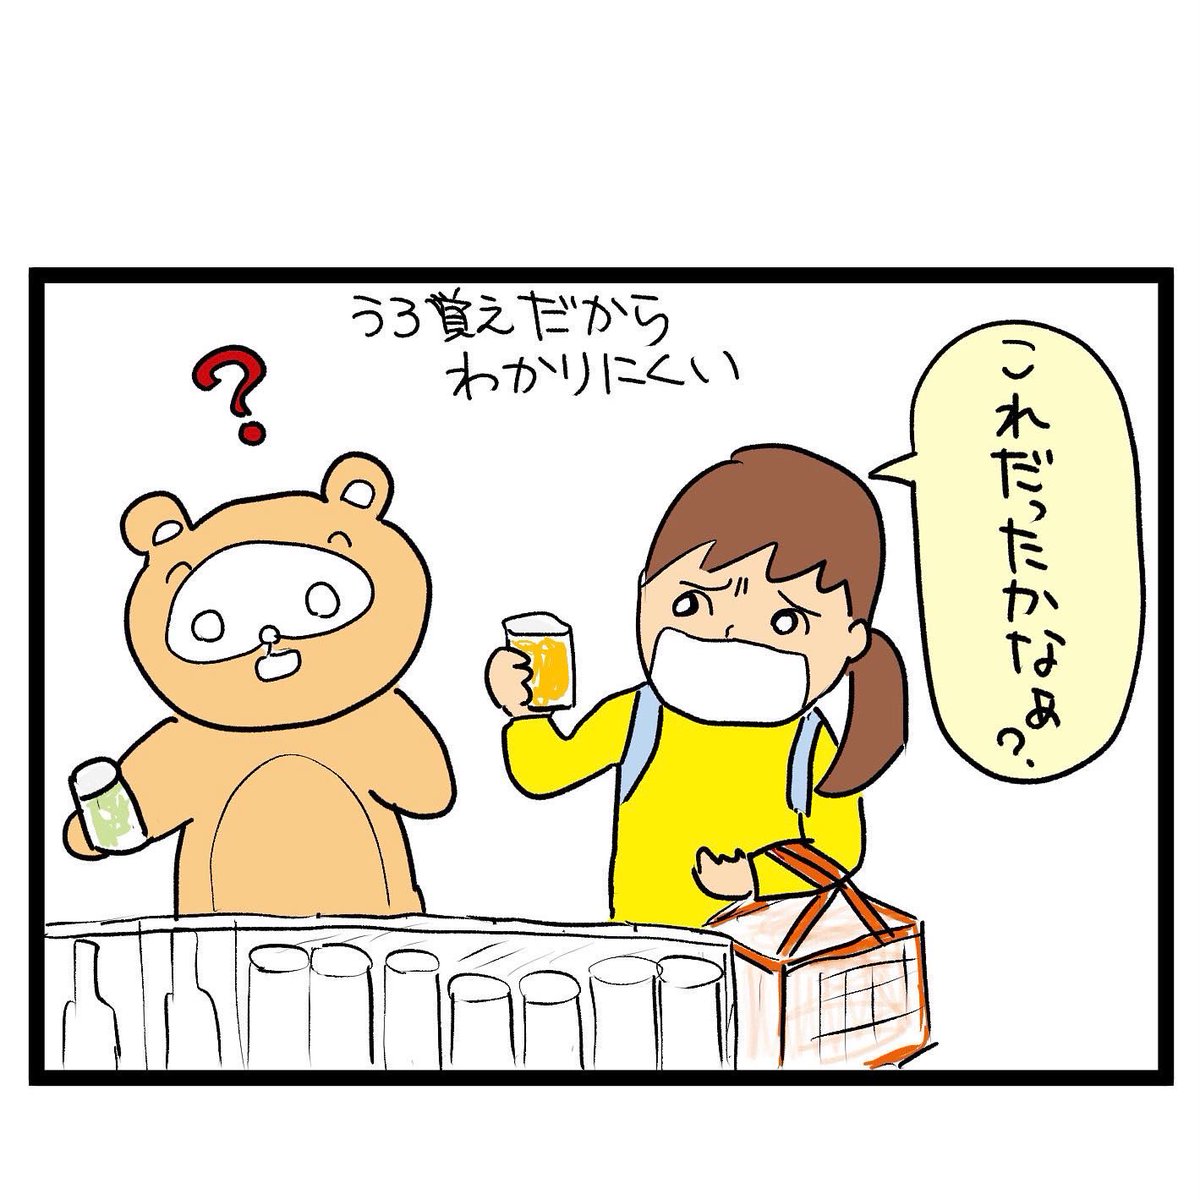 #四コマ漫画
#生ジョッキ缶
ビールはコレに決めたー!! 